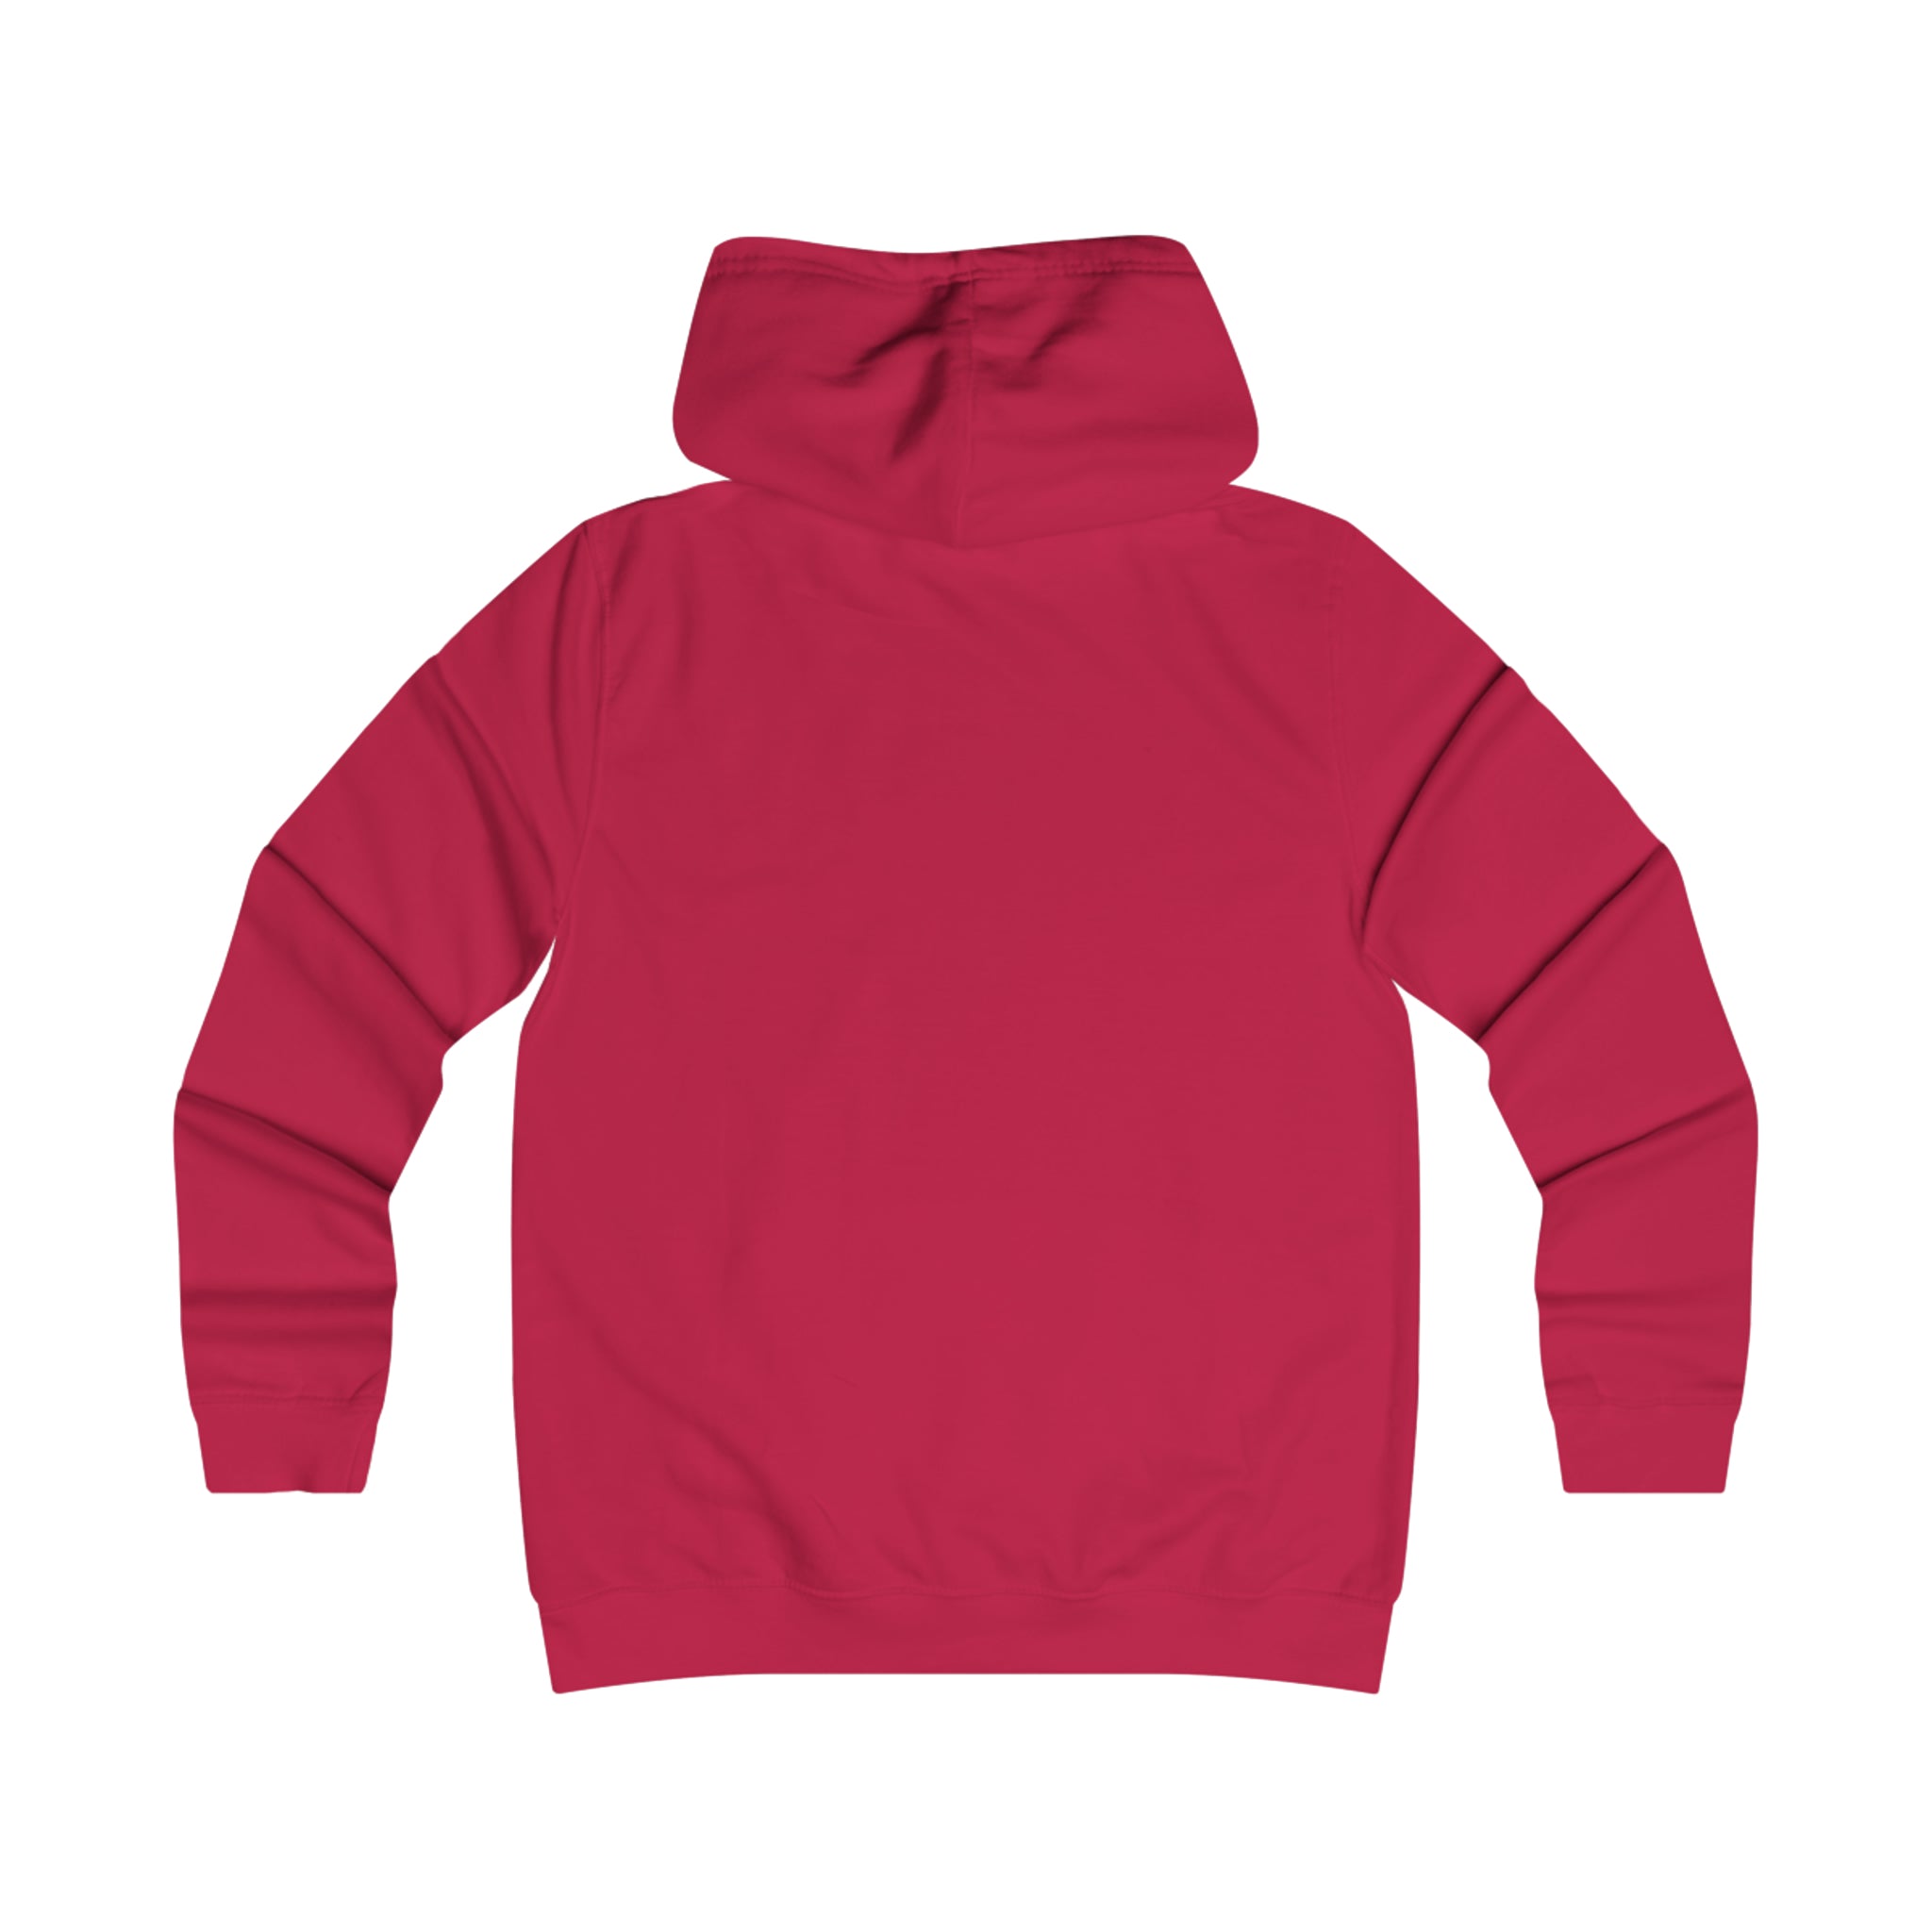 Girlie College Fire Red Hoodie Sweatshirt